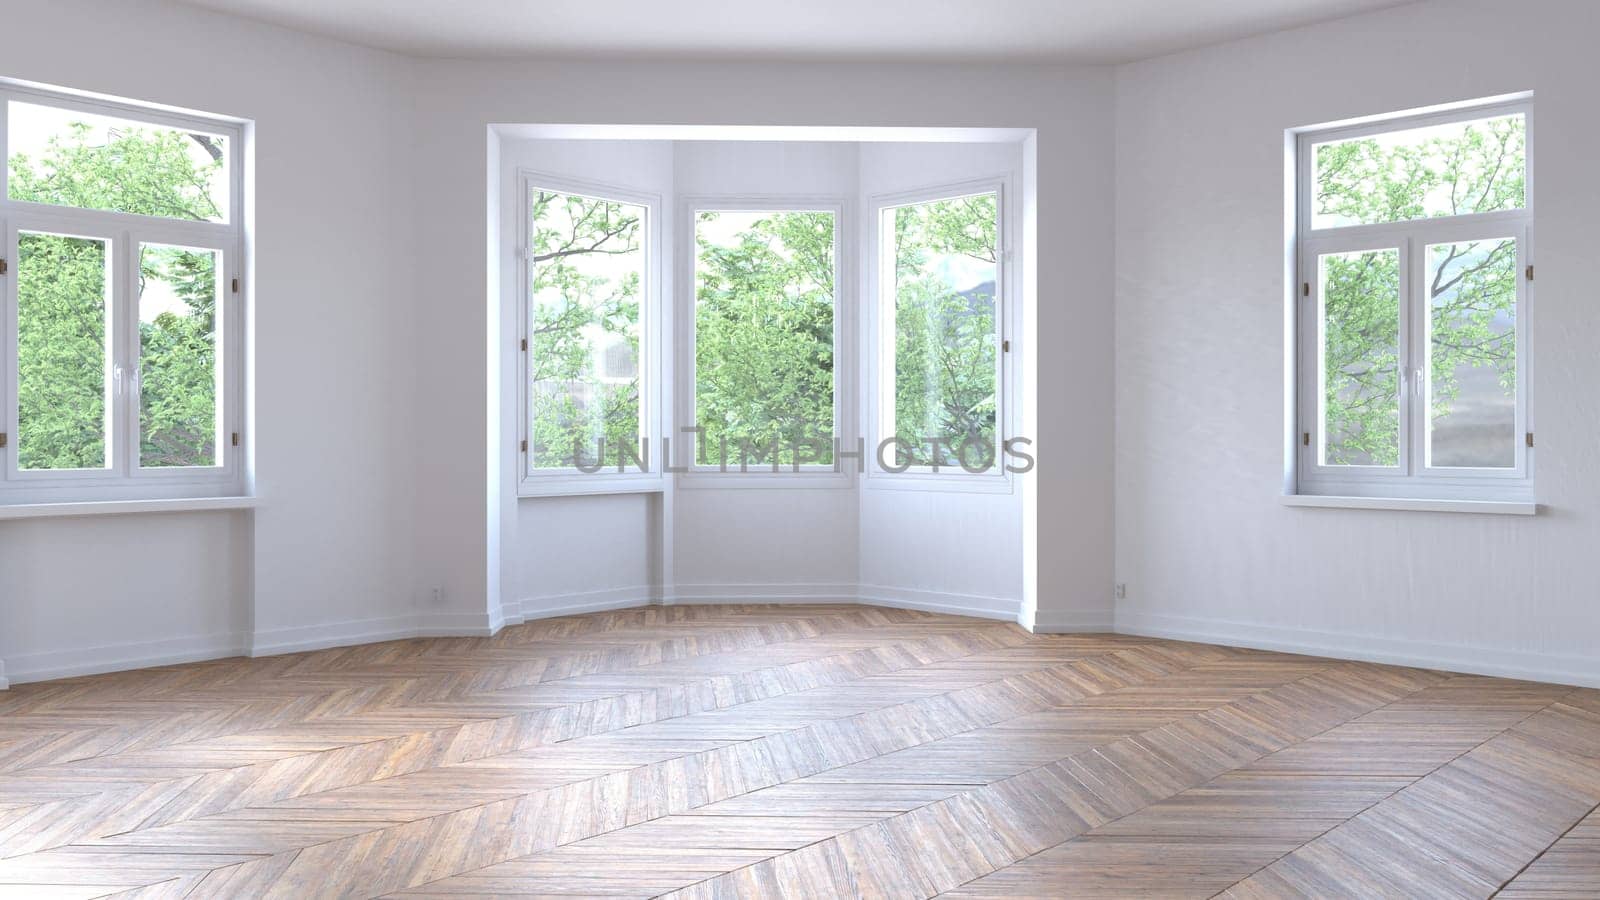 Empty room with parquet floor. 3d render design